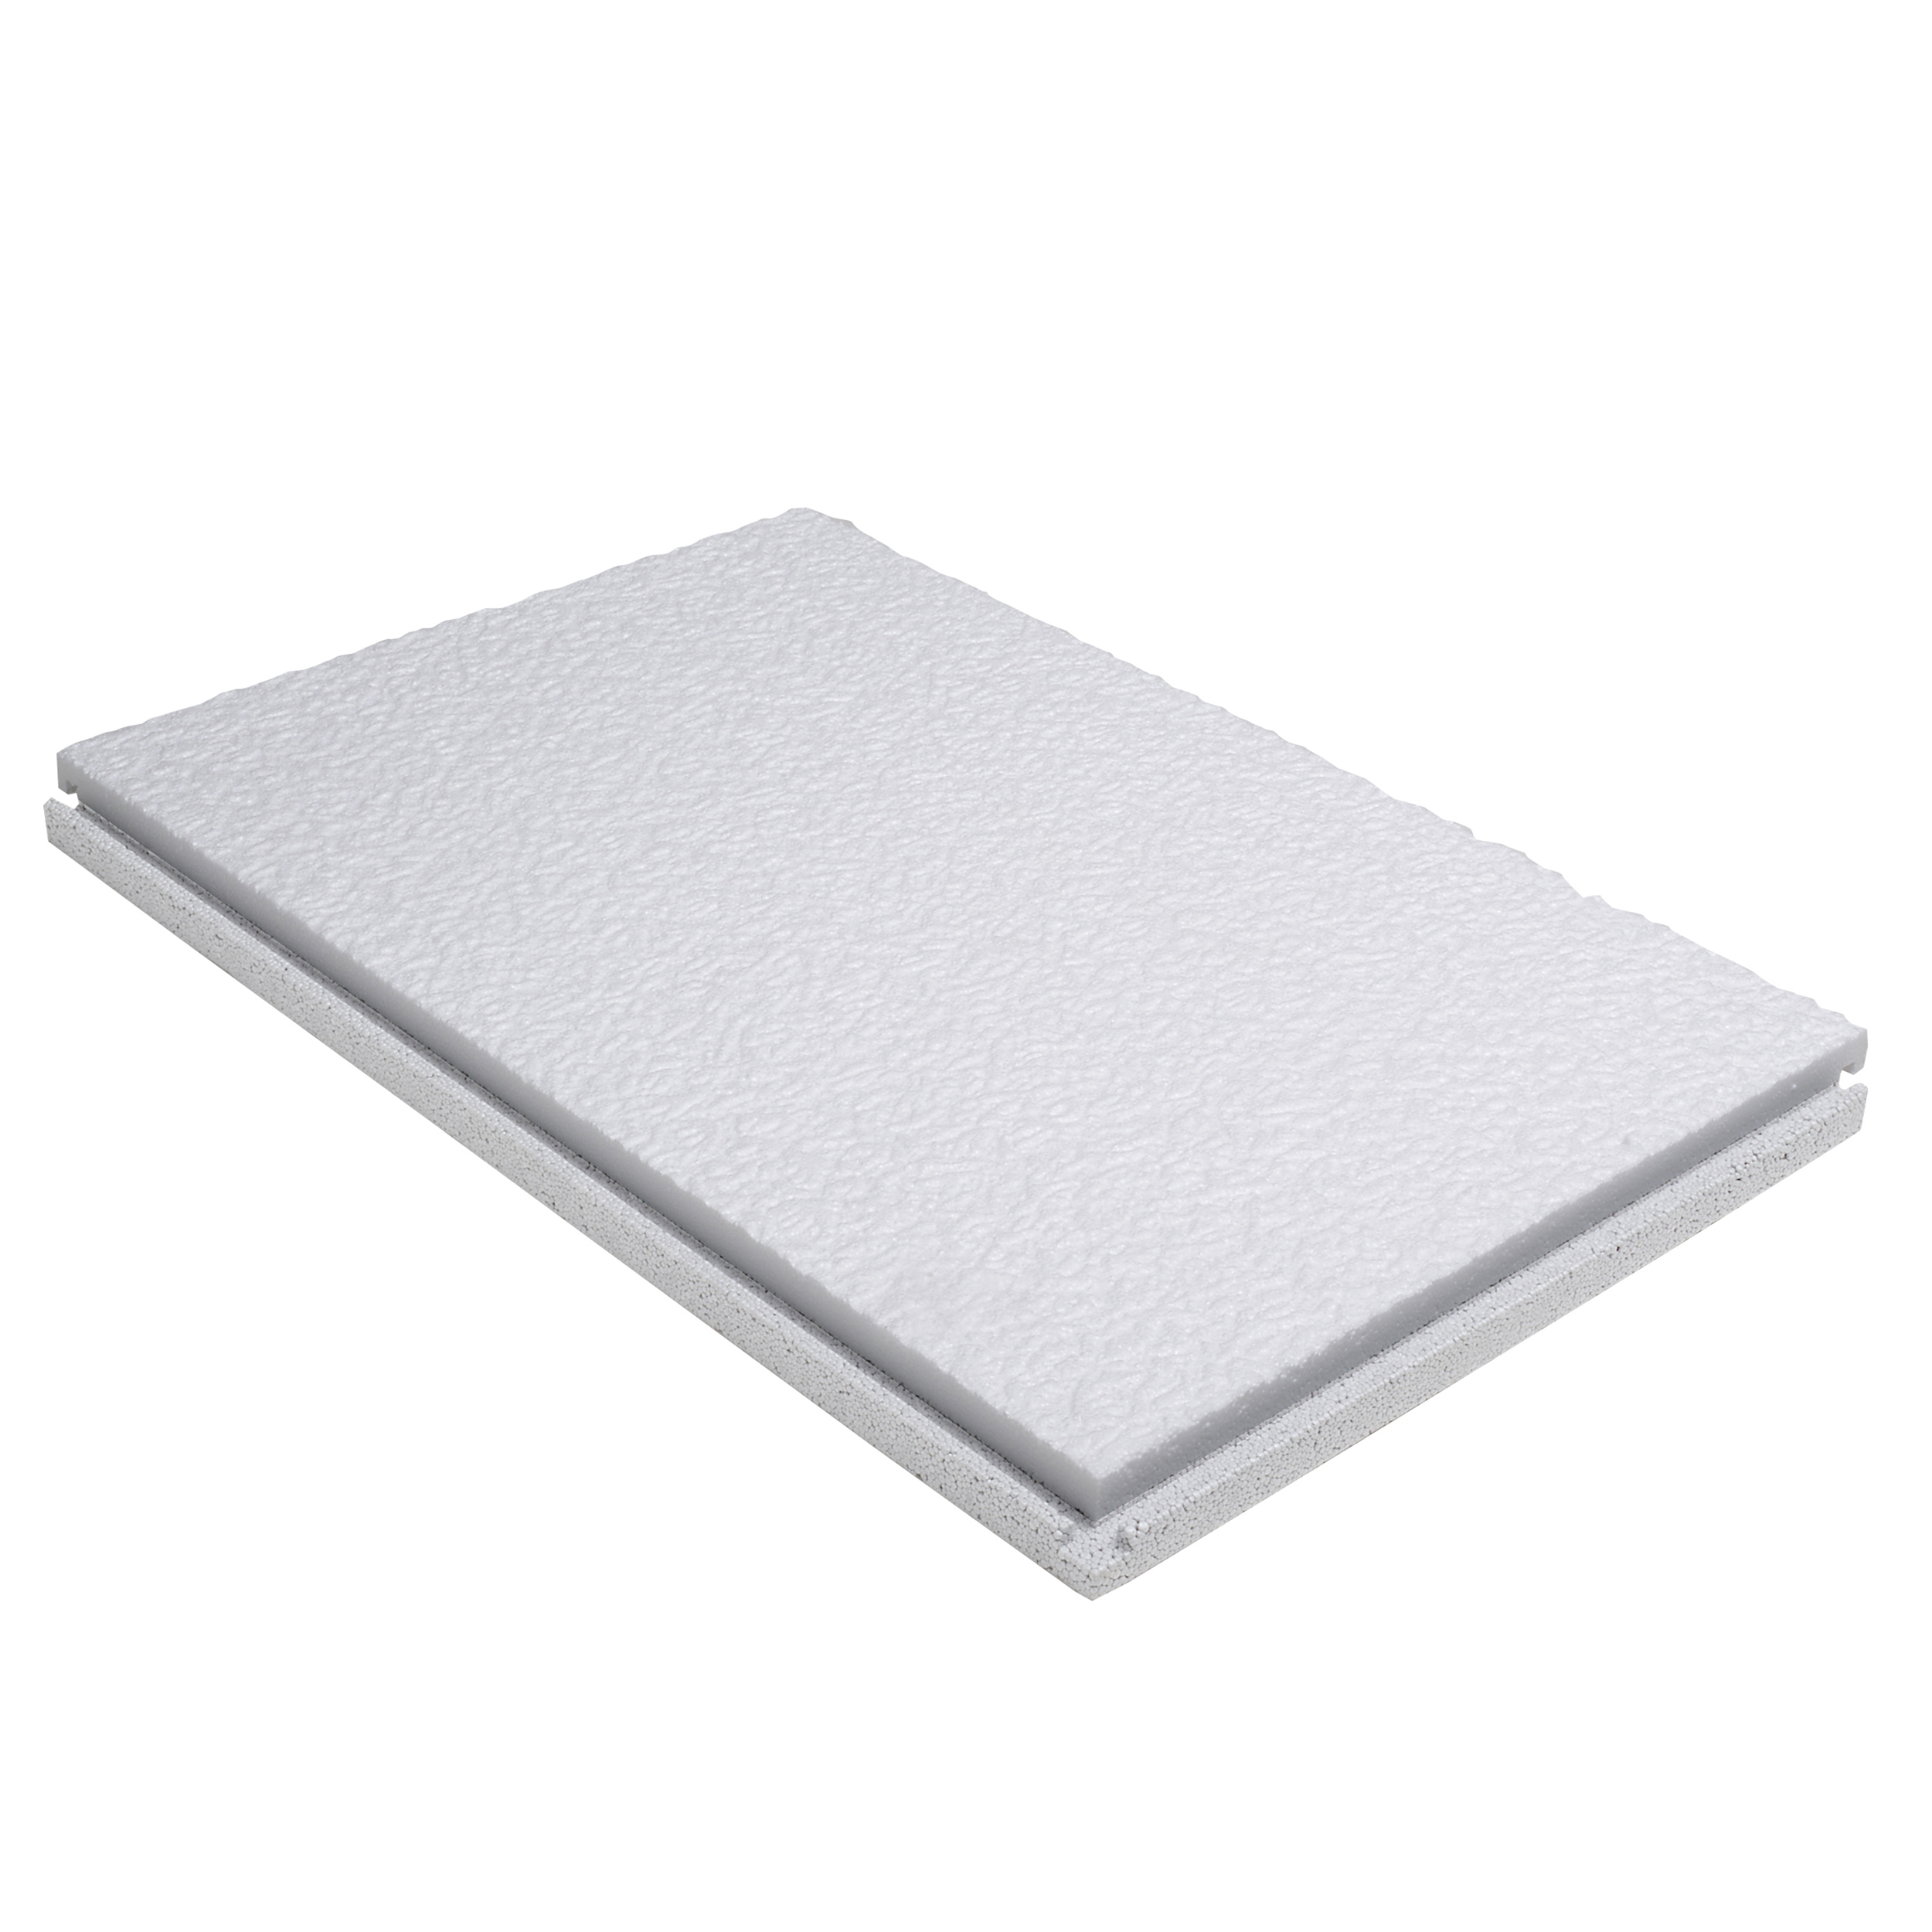 CLIMAPOR Dalle de plafond isolante emboîtable - polystyrène - blanc - épaisseur 3 cm - 58 x 38 x 3cm